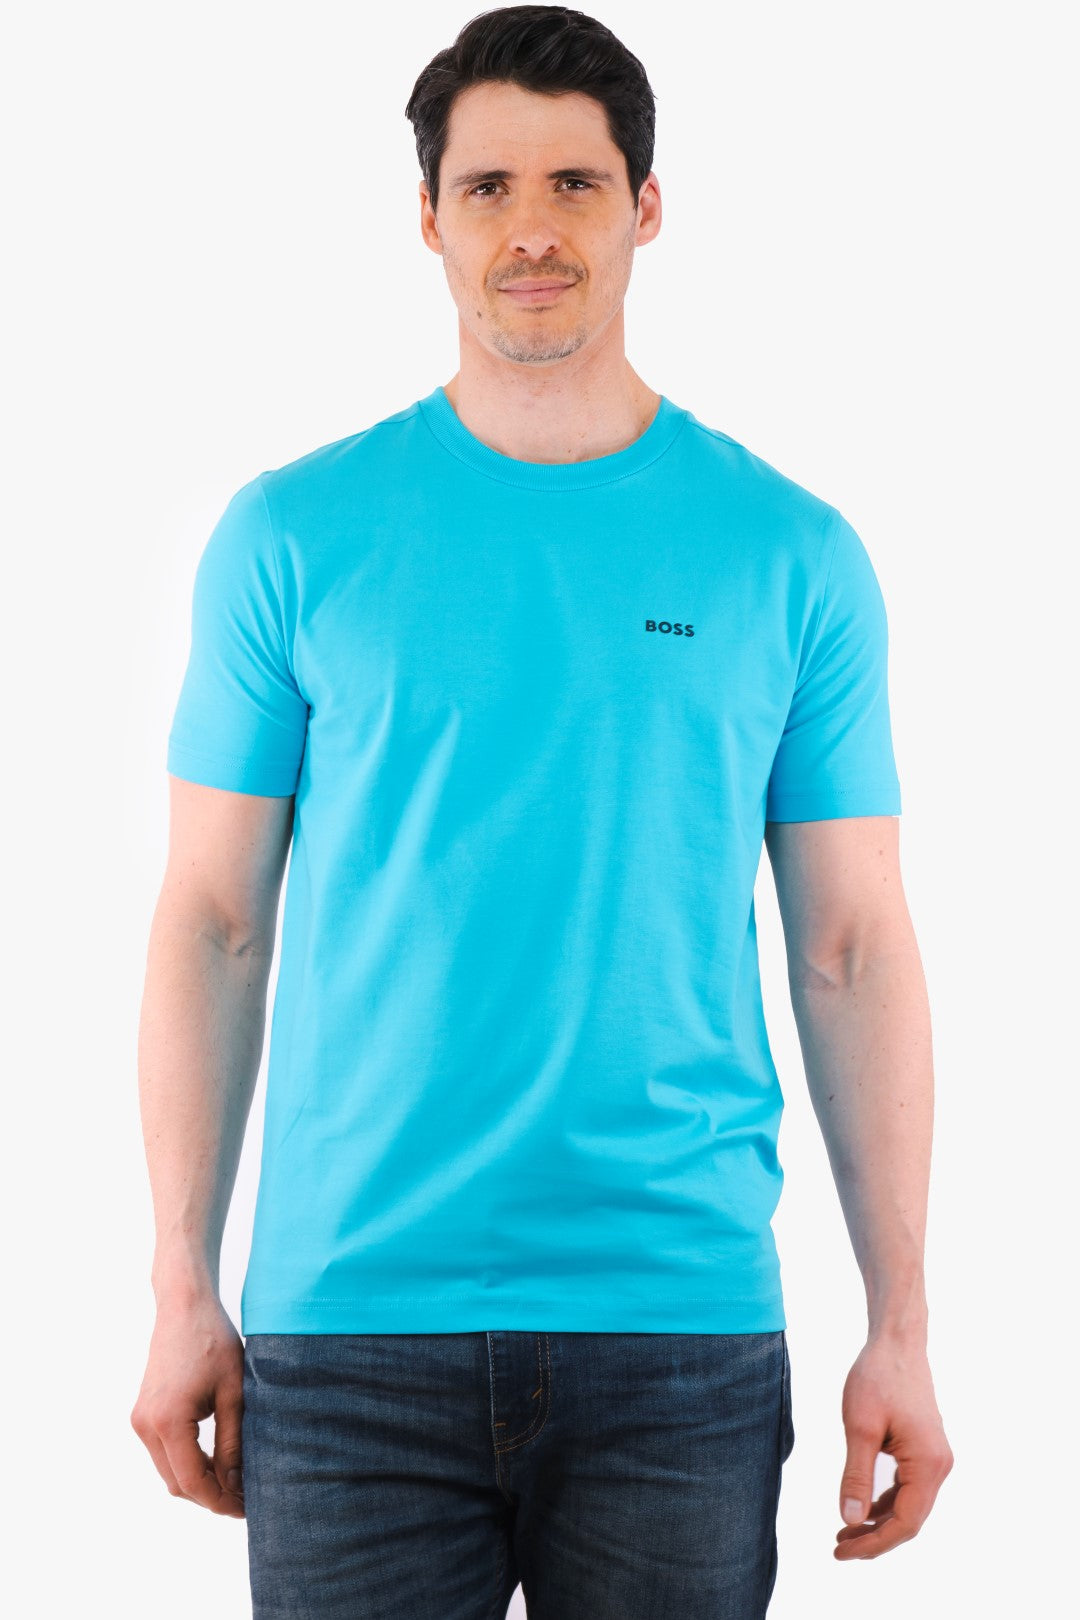 Blue Hugo Boss Tee T-Shirt